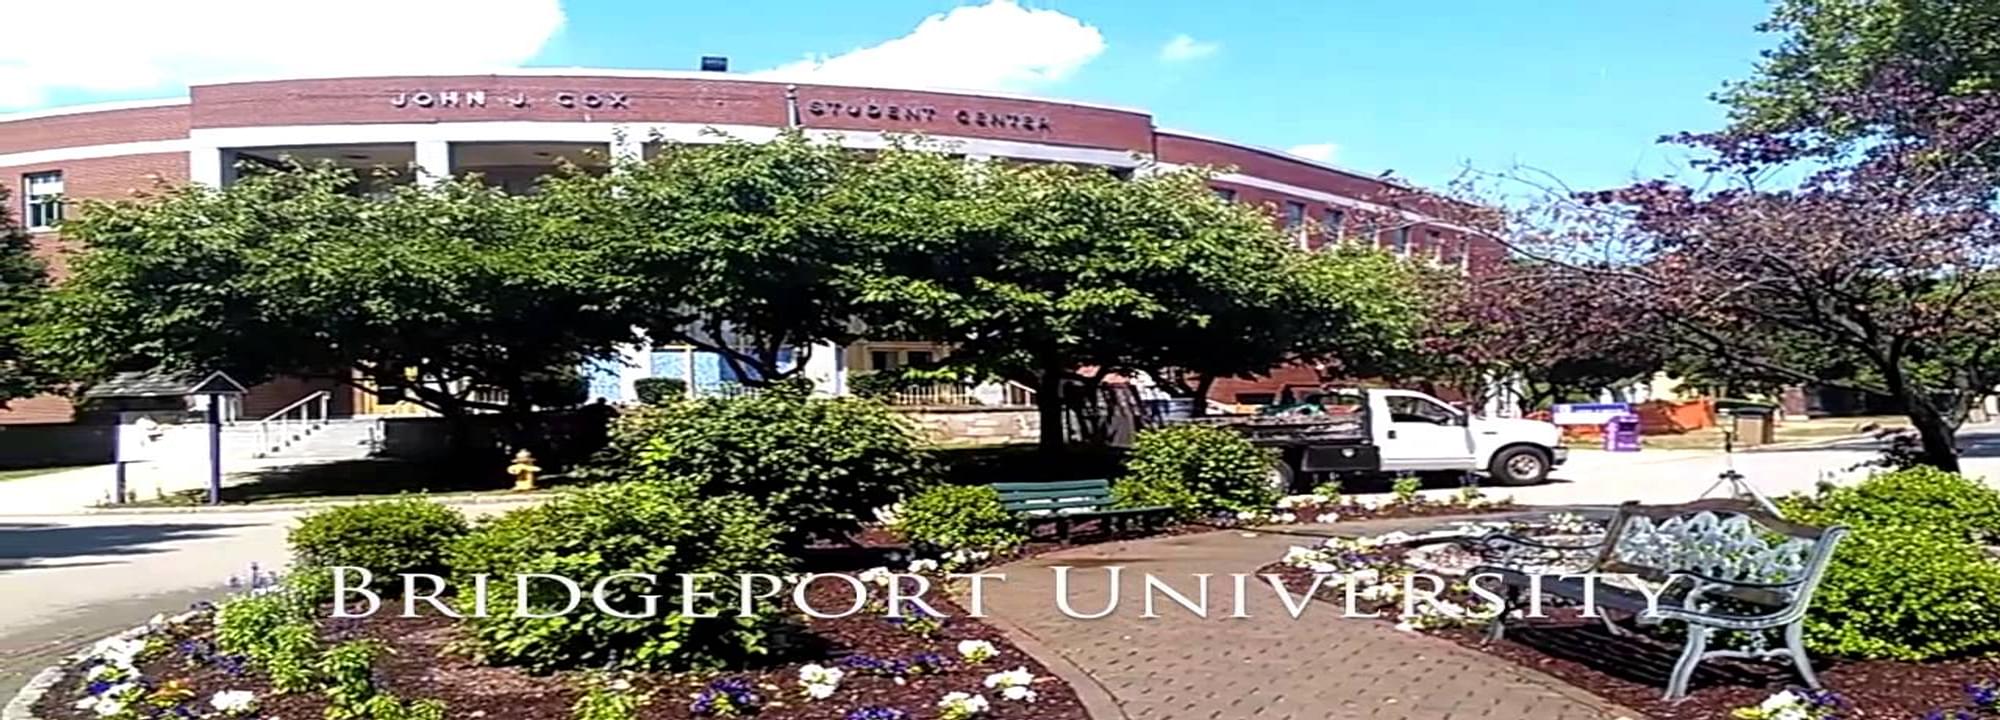 University Of Bridgeport, Bridgeport Courses, Fees, Ranking, & Admission  Criteria